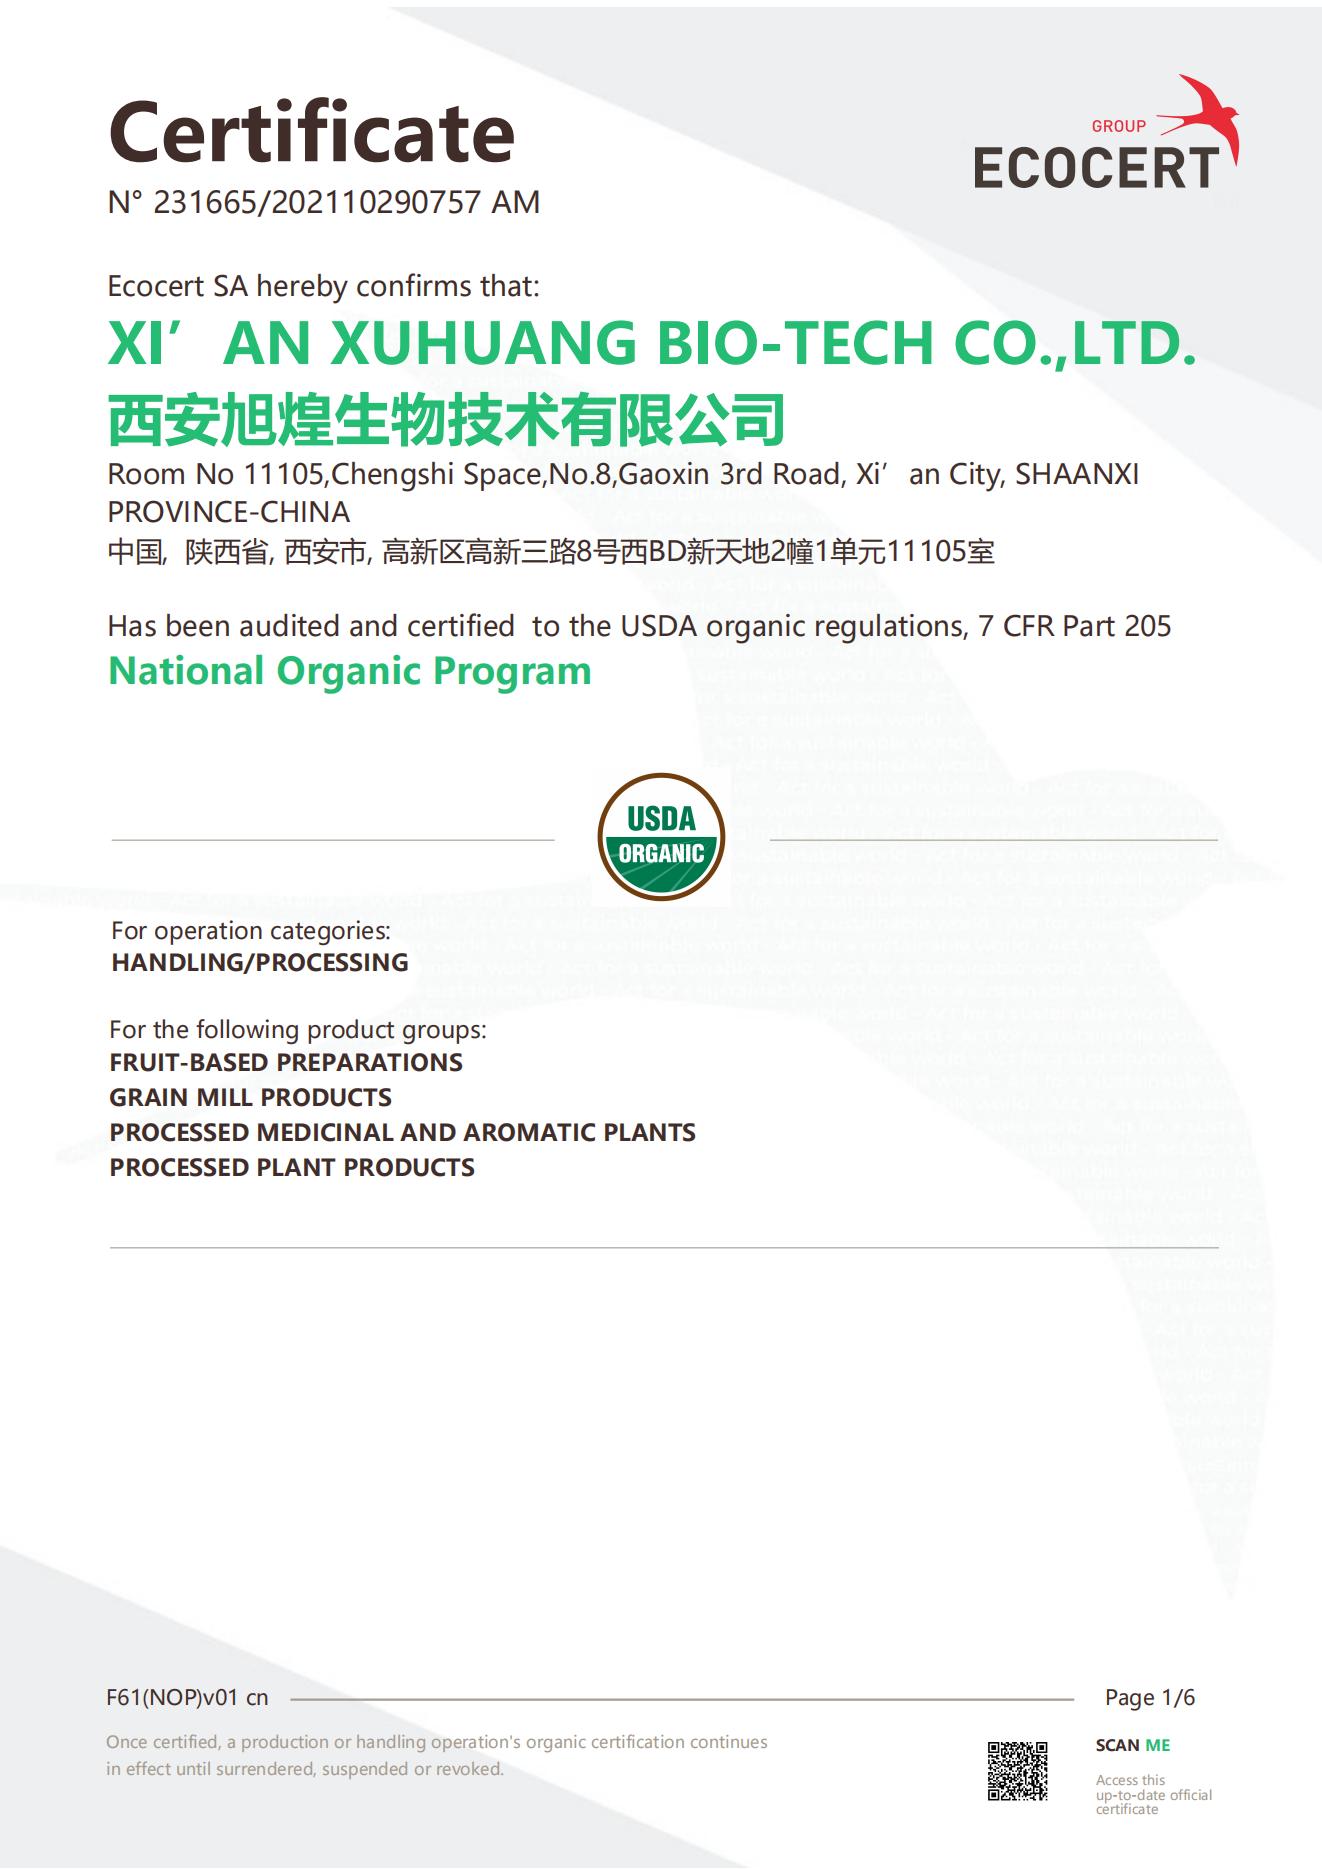  organic certificate usa (nop)-xuhuang